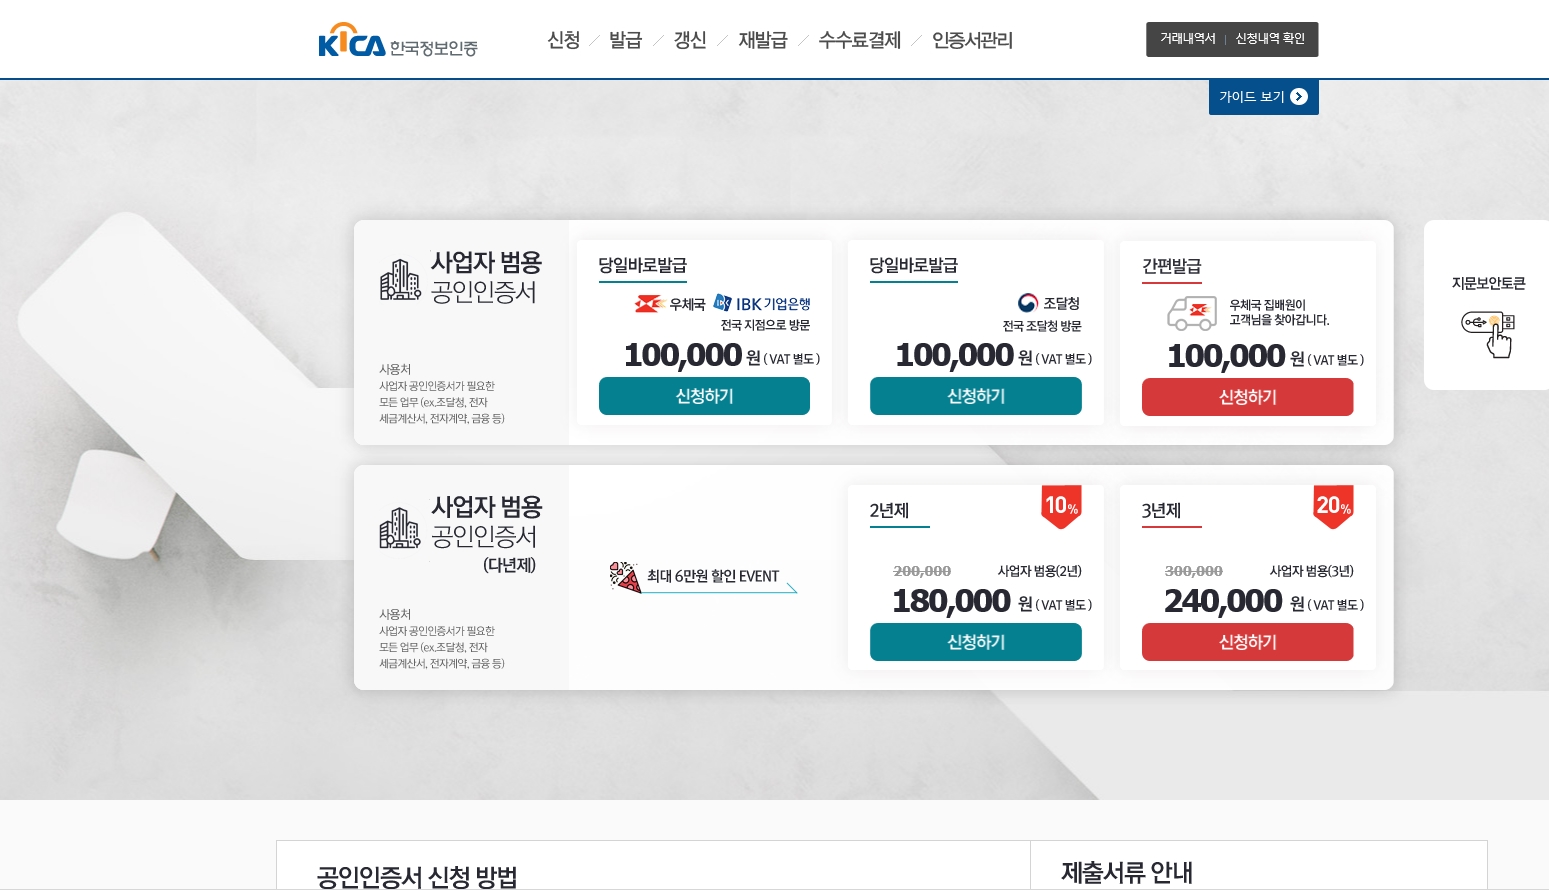 한국정보인증 SIGNRA 서비스 스크릿샷